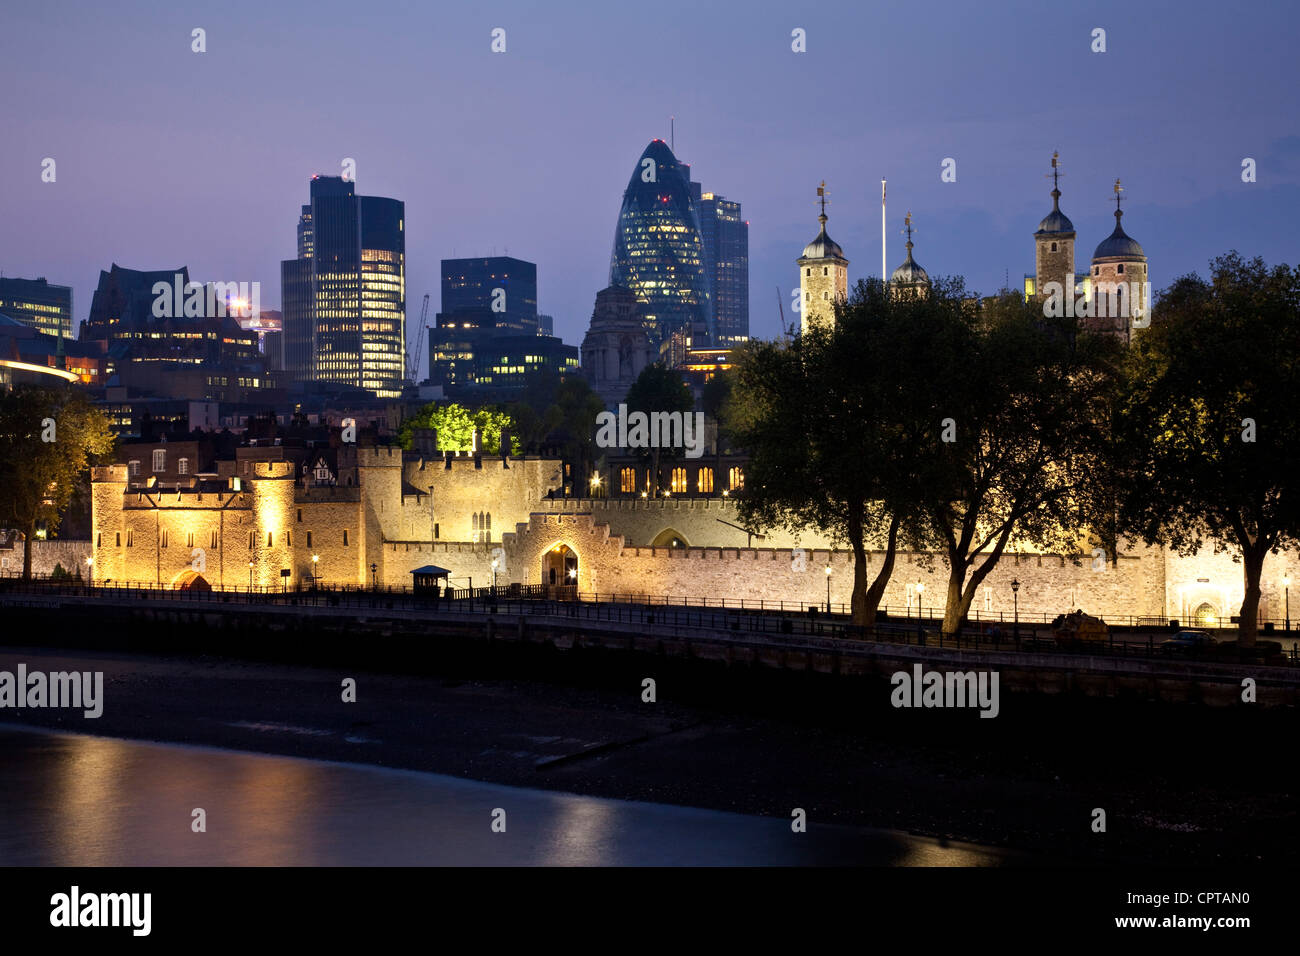 La Torre di Londra e lo skyline della città di Londra - Inghilterra Foto Stock